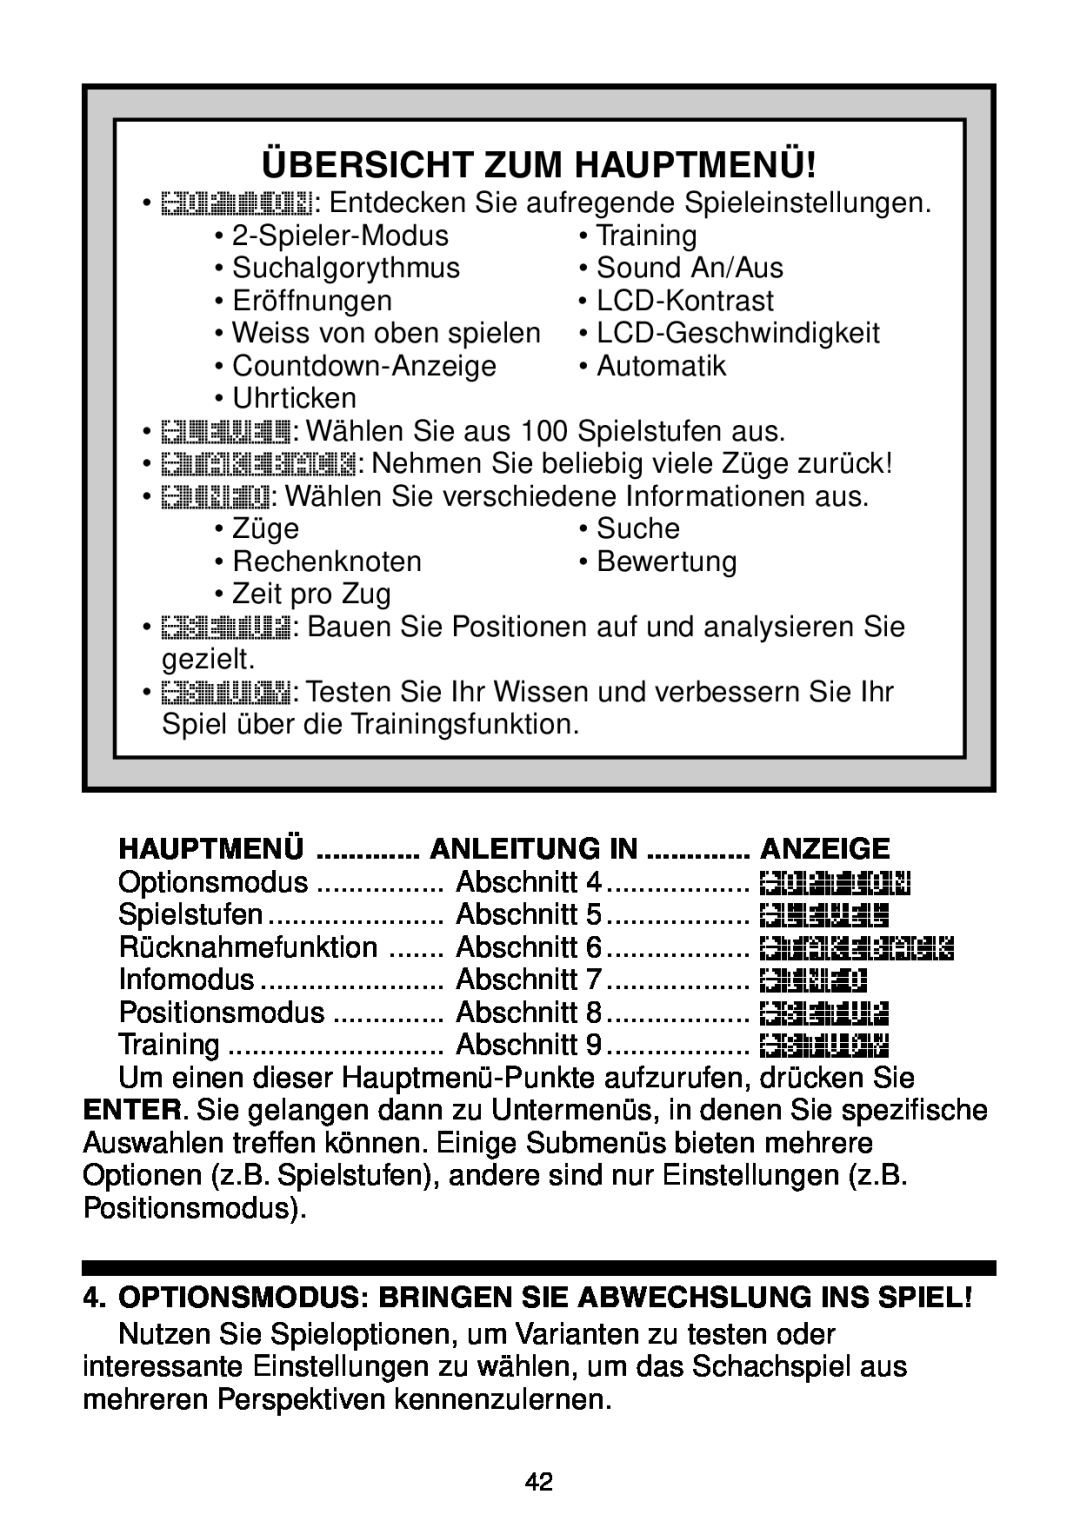 Saitek Maestro Travel Chess Computer manual Übersicht Zum Hauptmenü, Anleitung In, Anzeige 